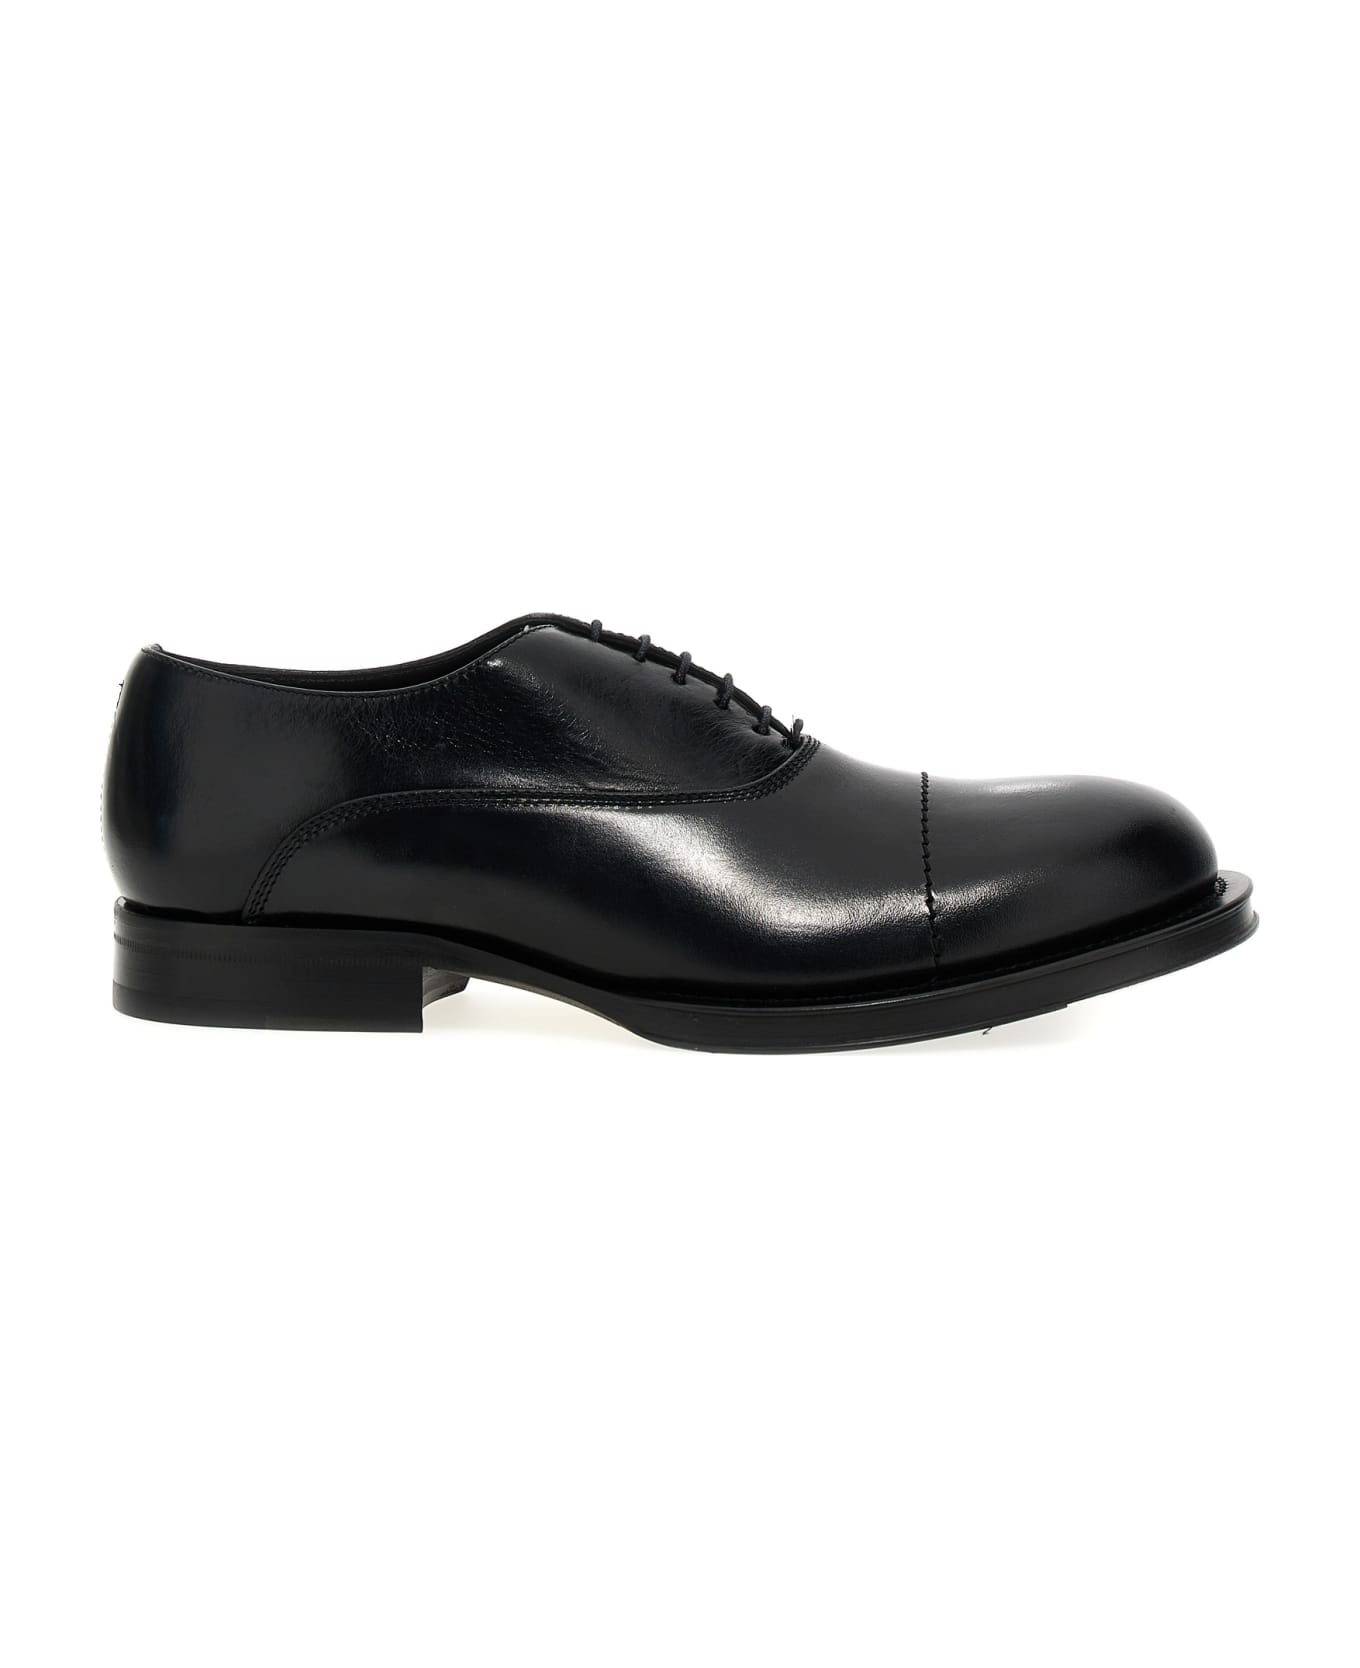 Lanvin 'richelieu Medley' Oxford Lace Up Shoes - Black